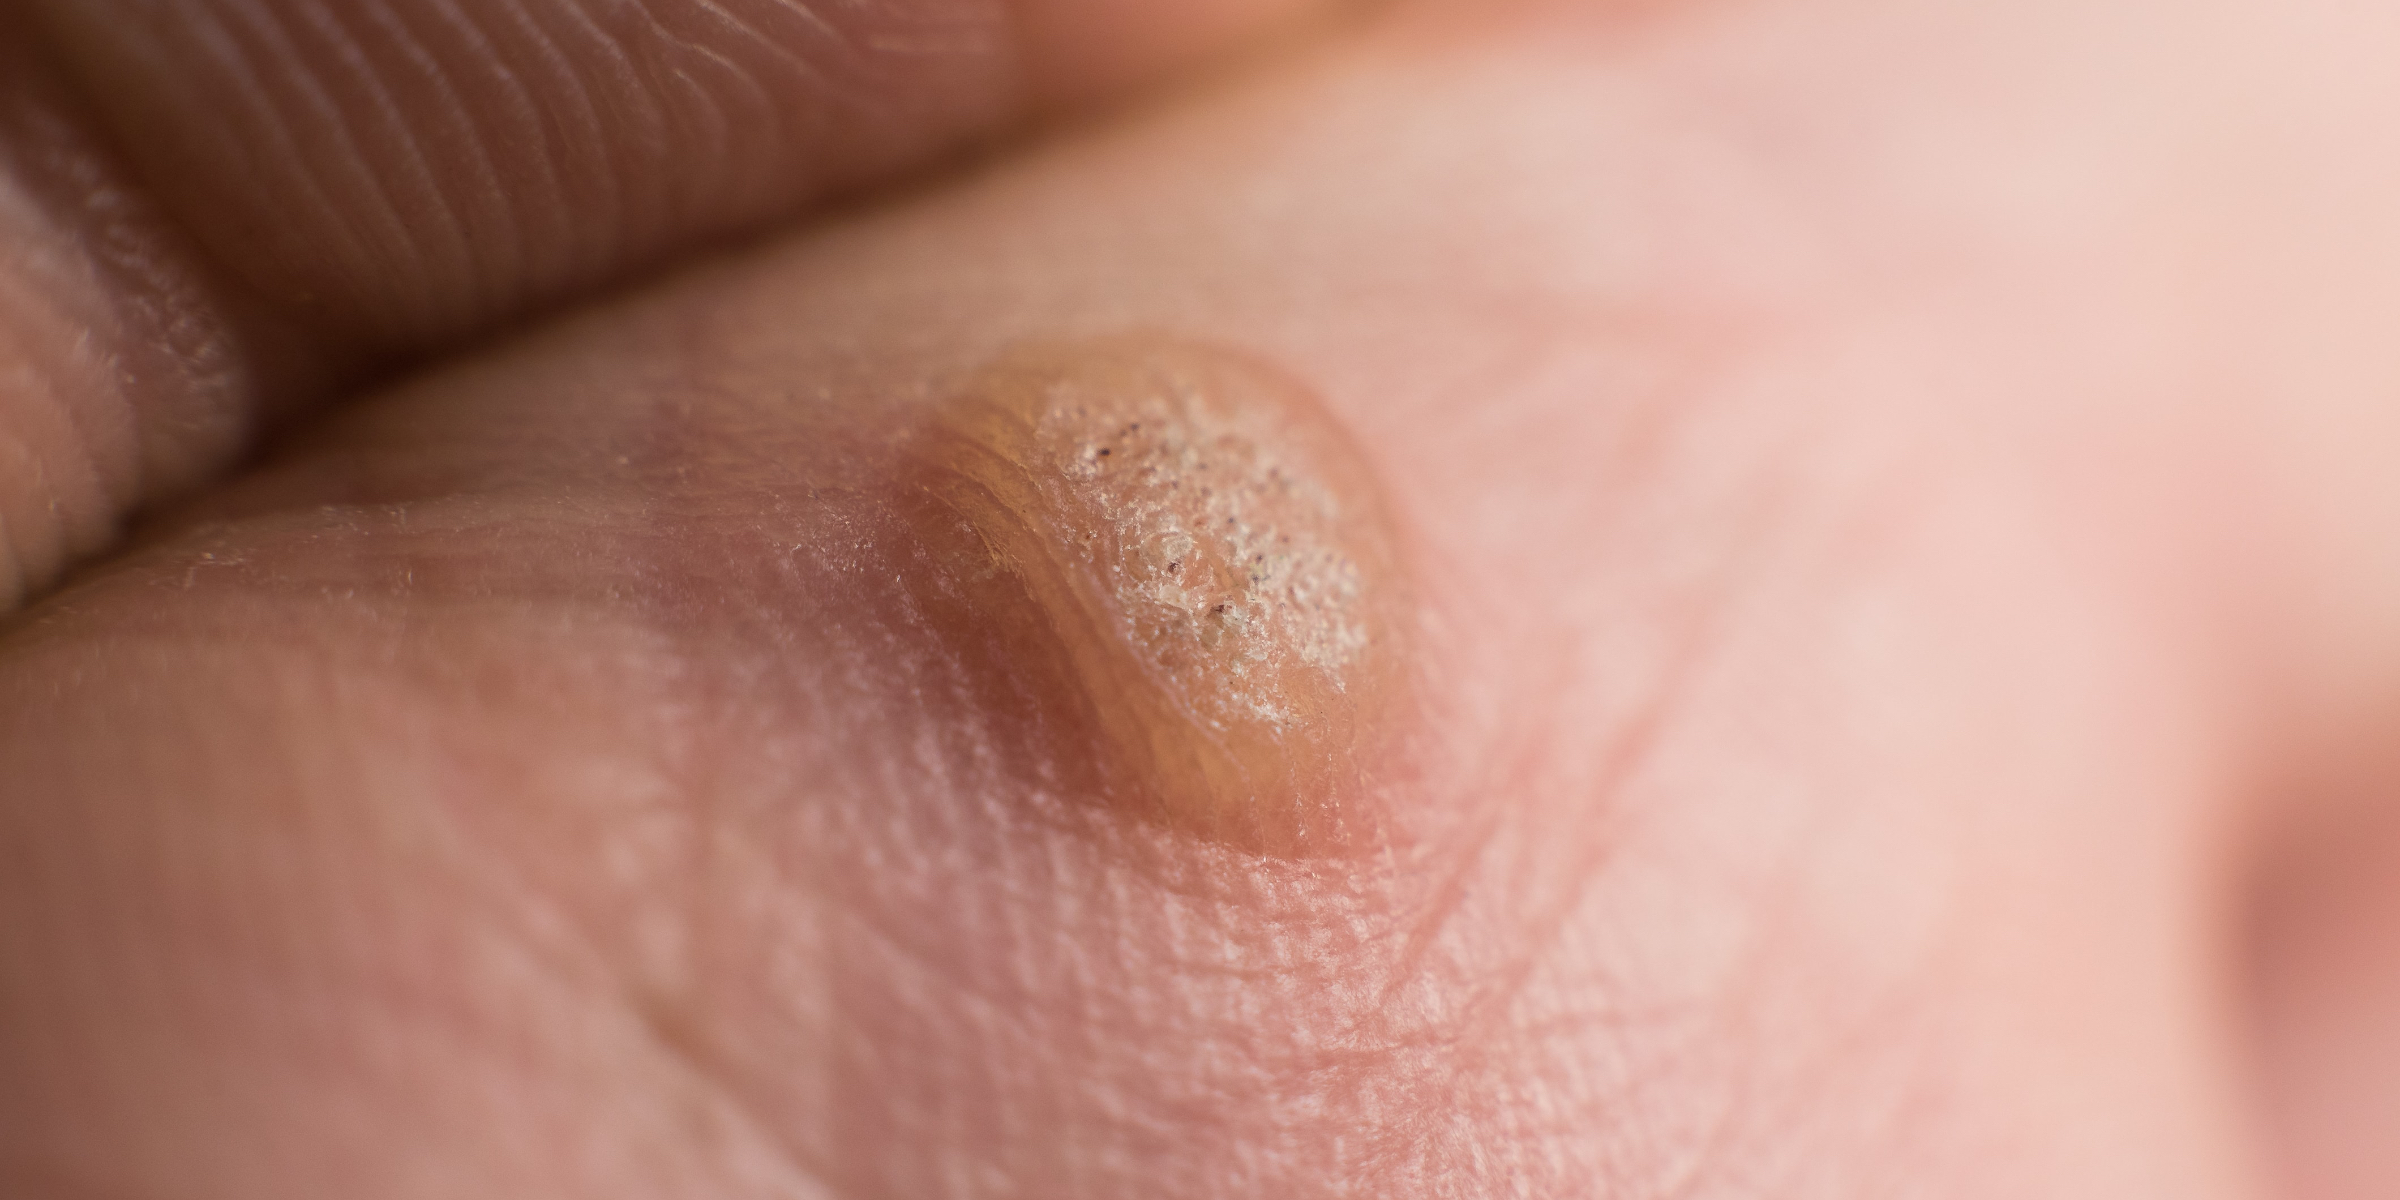 large wart on finger